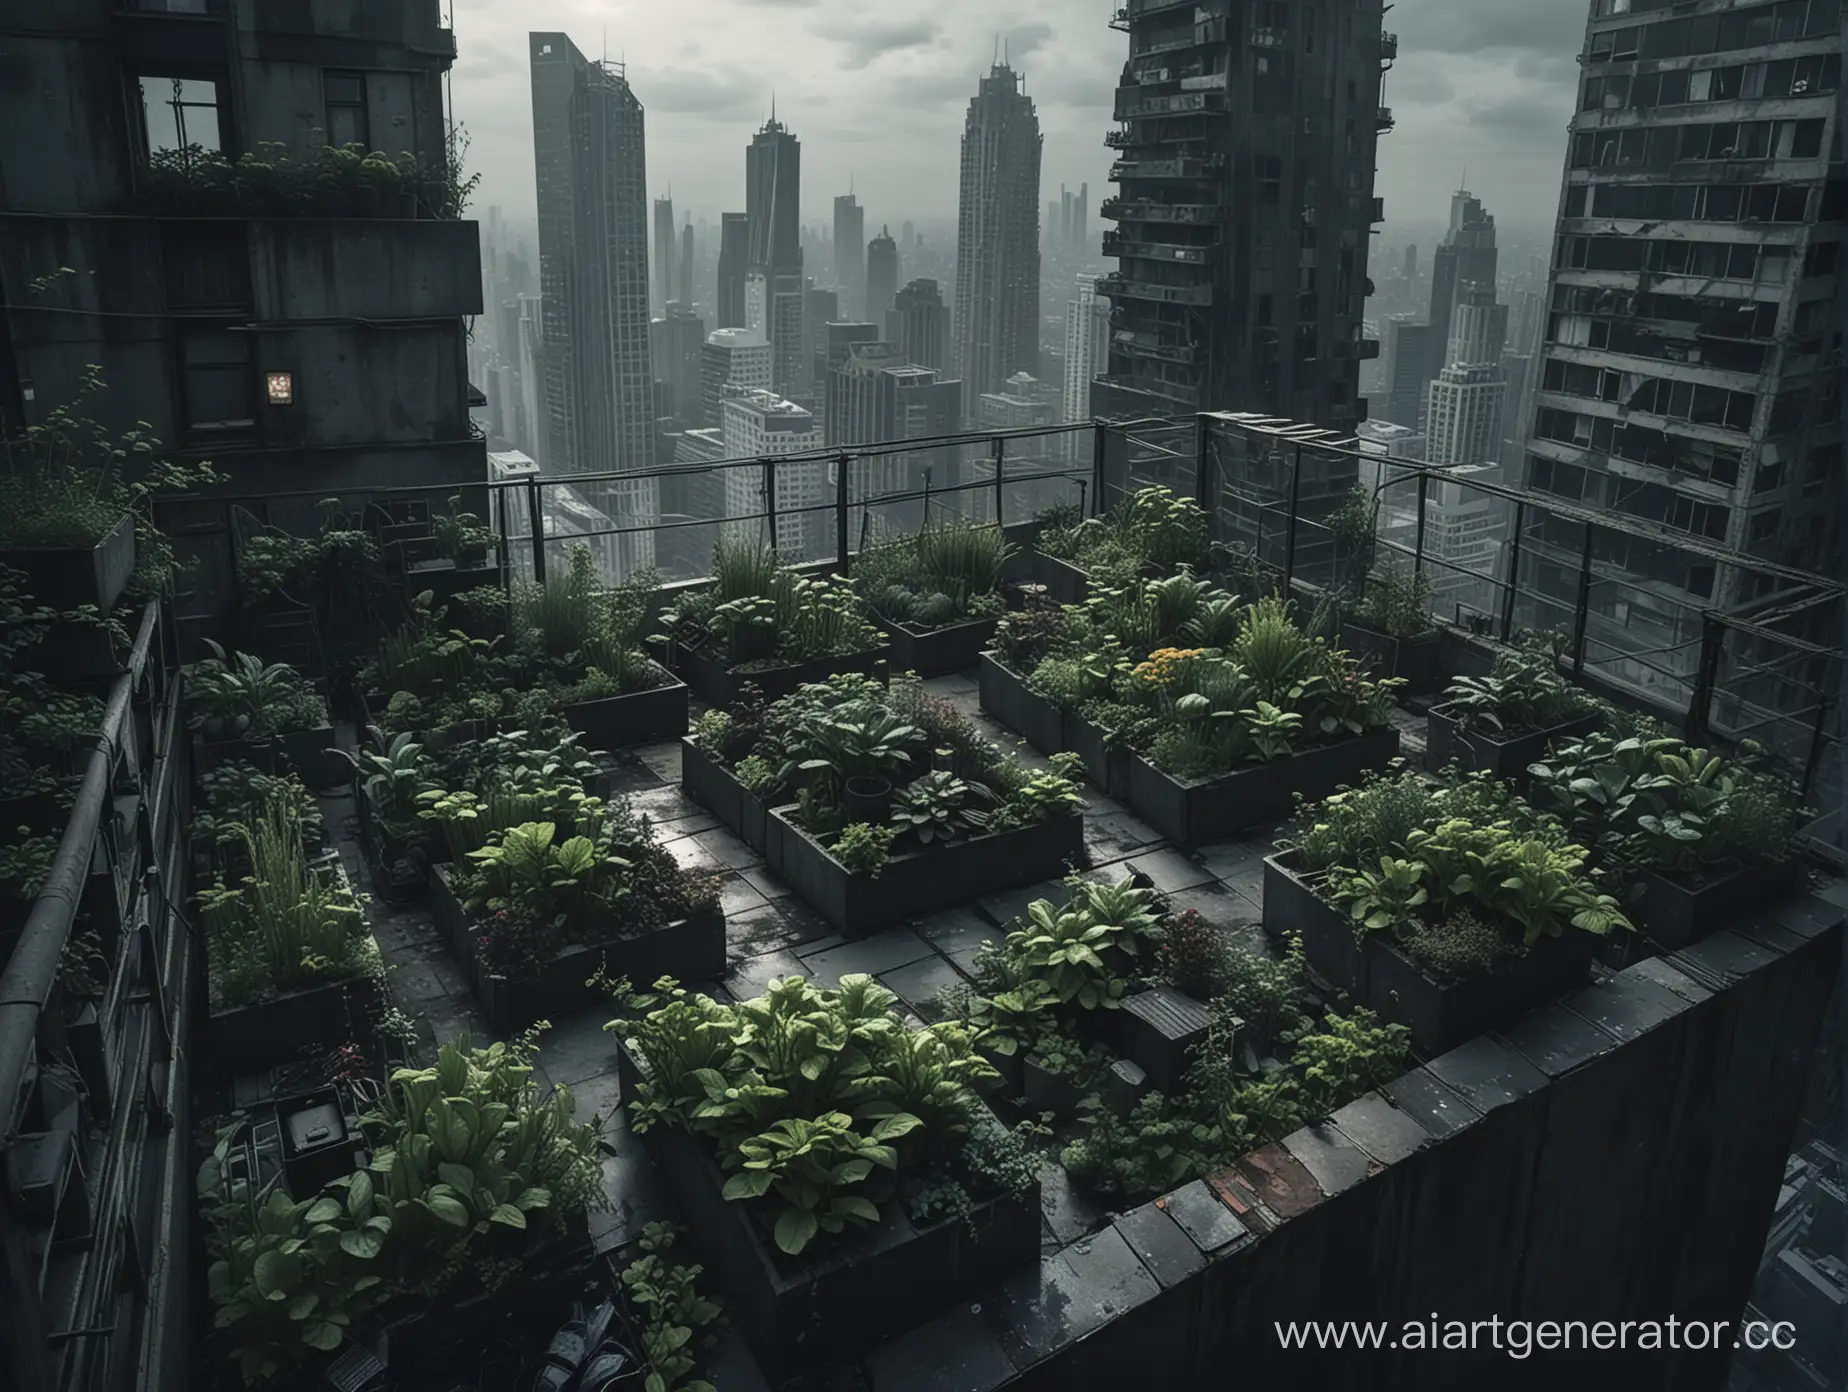 Небольшой огород на крыше небоскреба, в темных тонах, в стиле постапокалиптики.